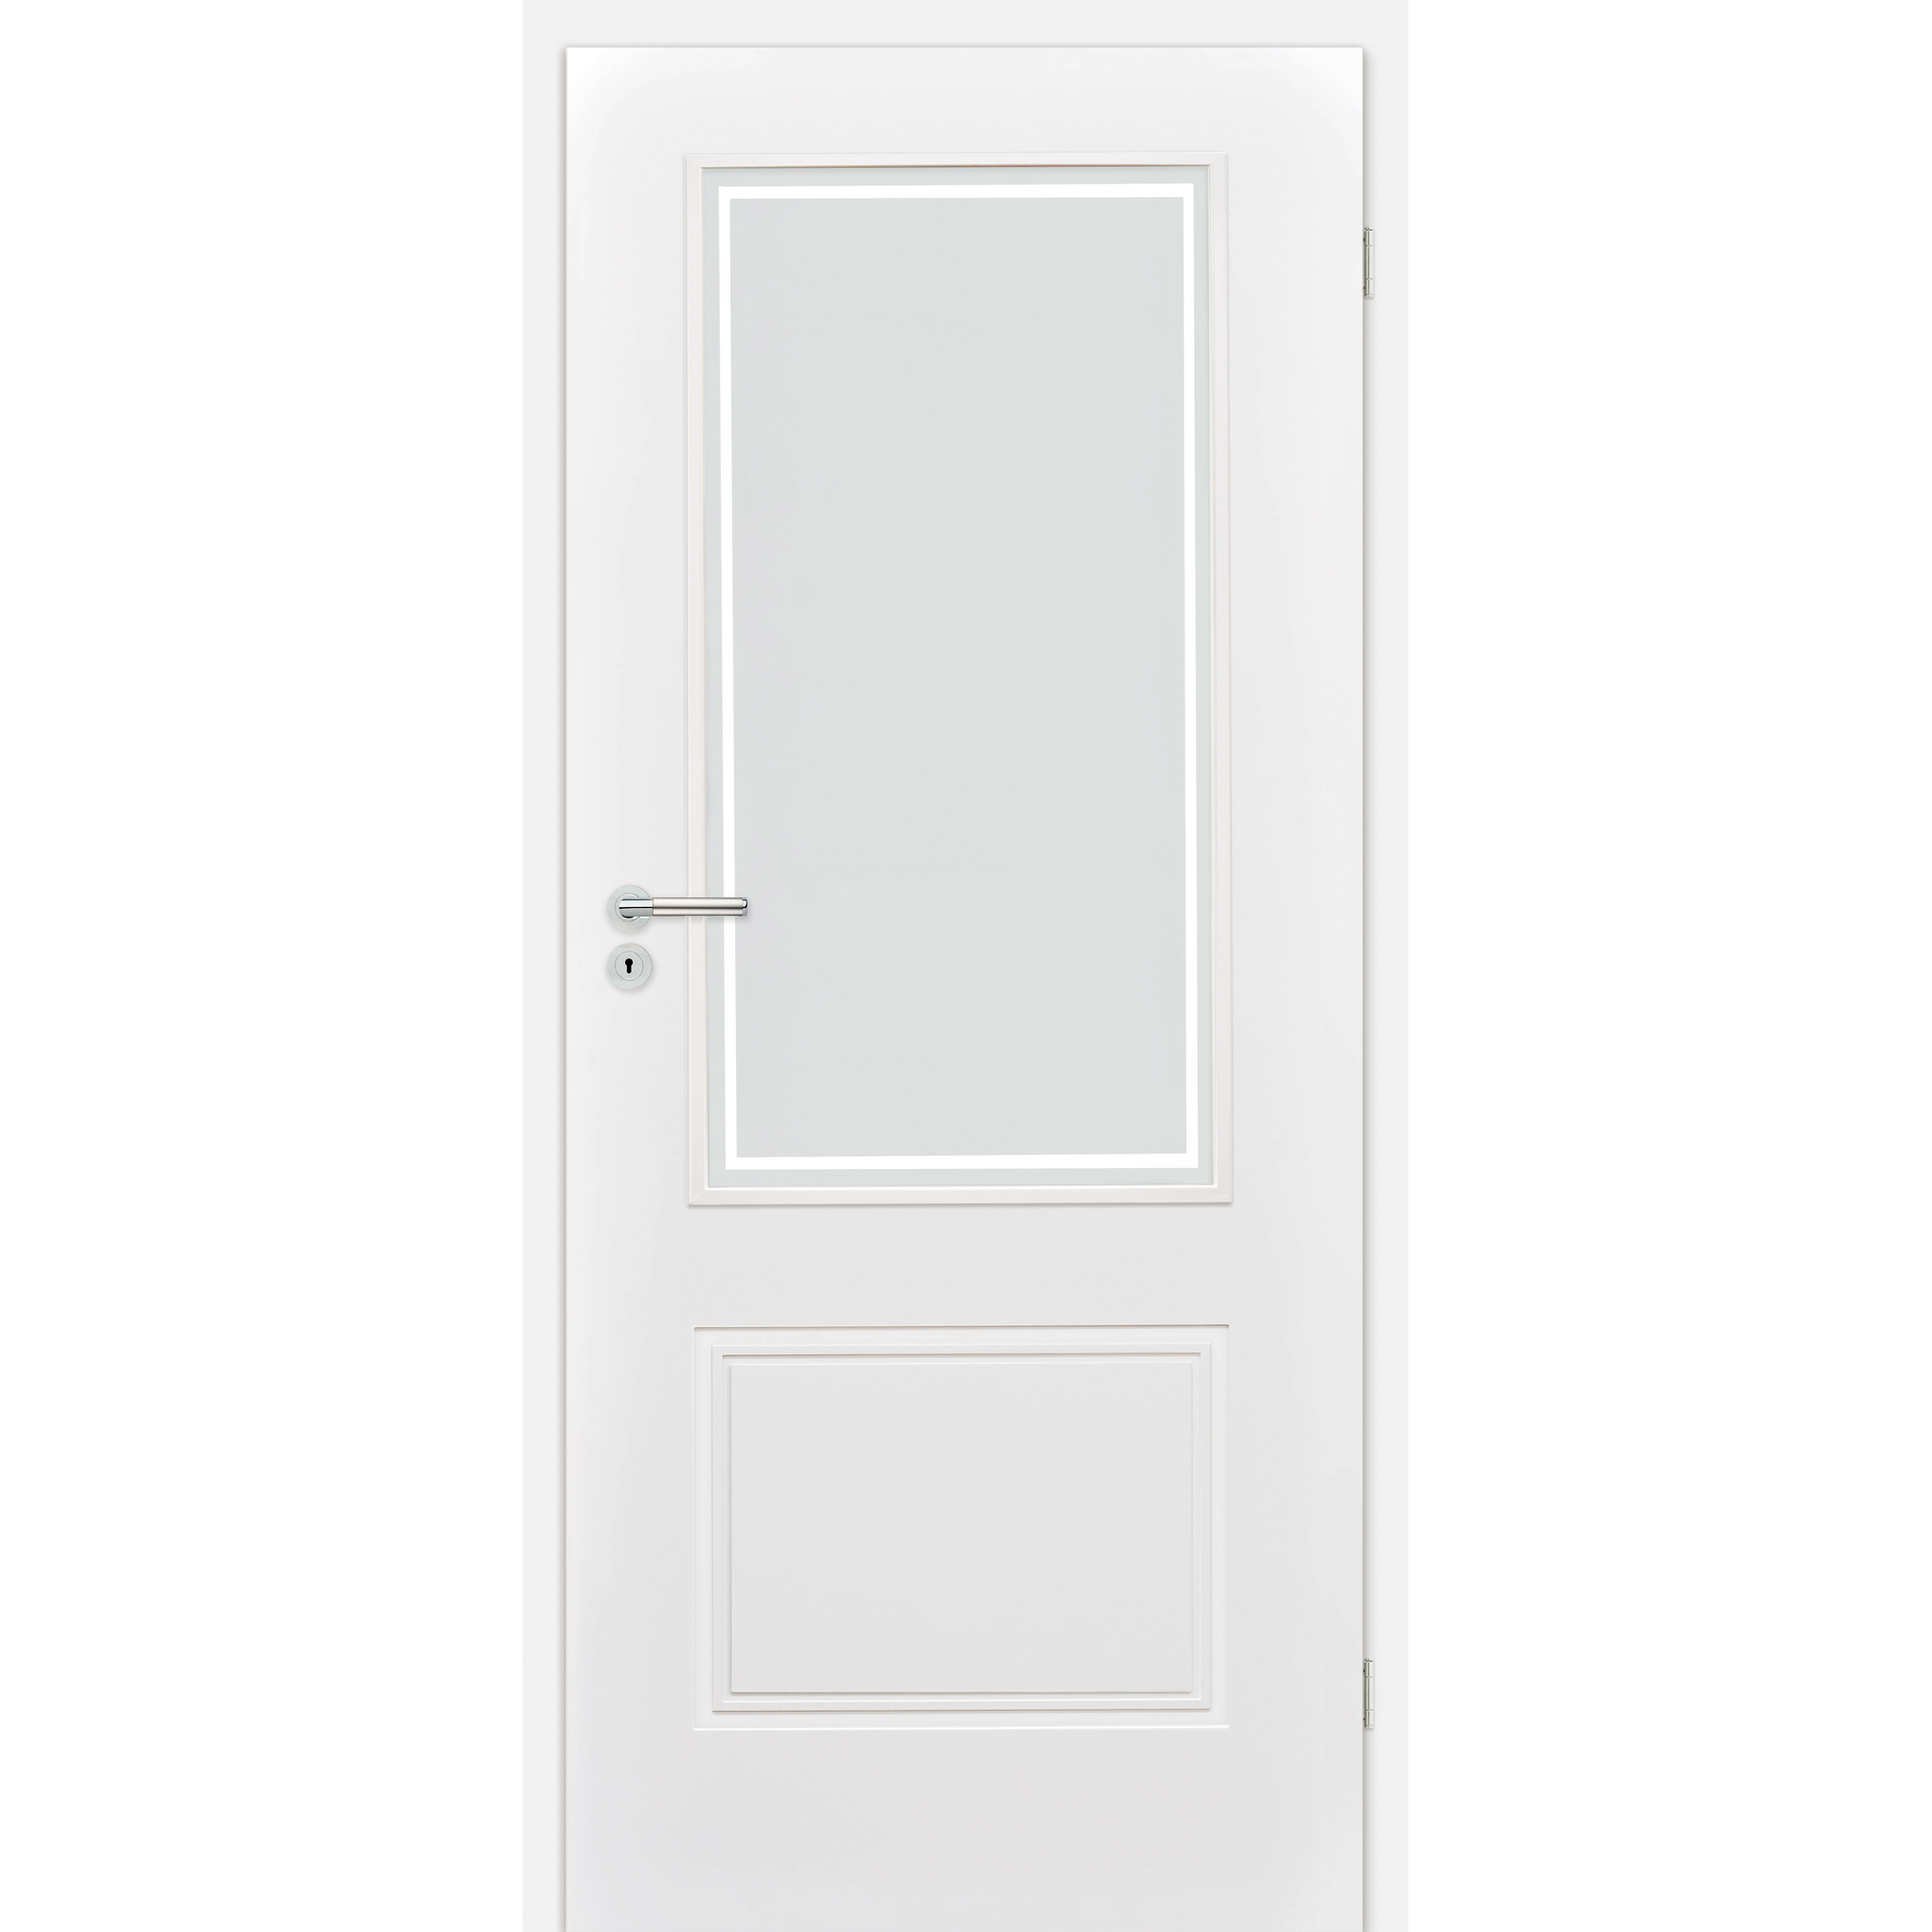 Innentür 'Linea 1.3' mit Lichtausschnitt weiß 198,5 x 98,5 cm, Rechtsanschlag + product picture